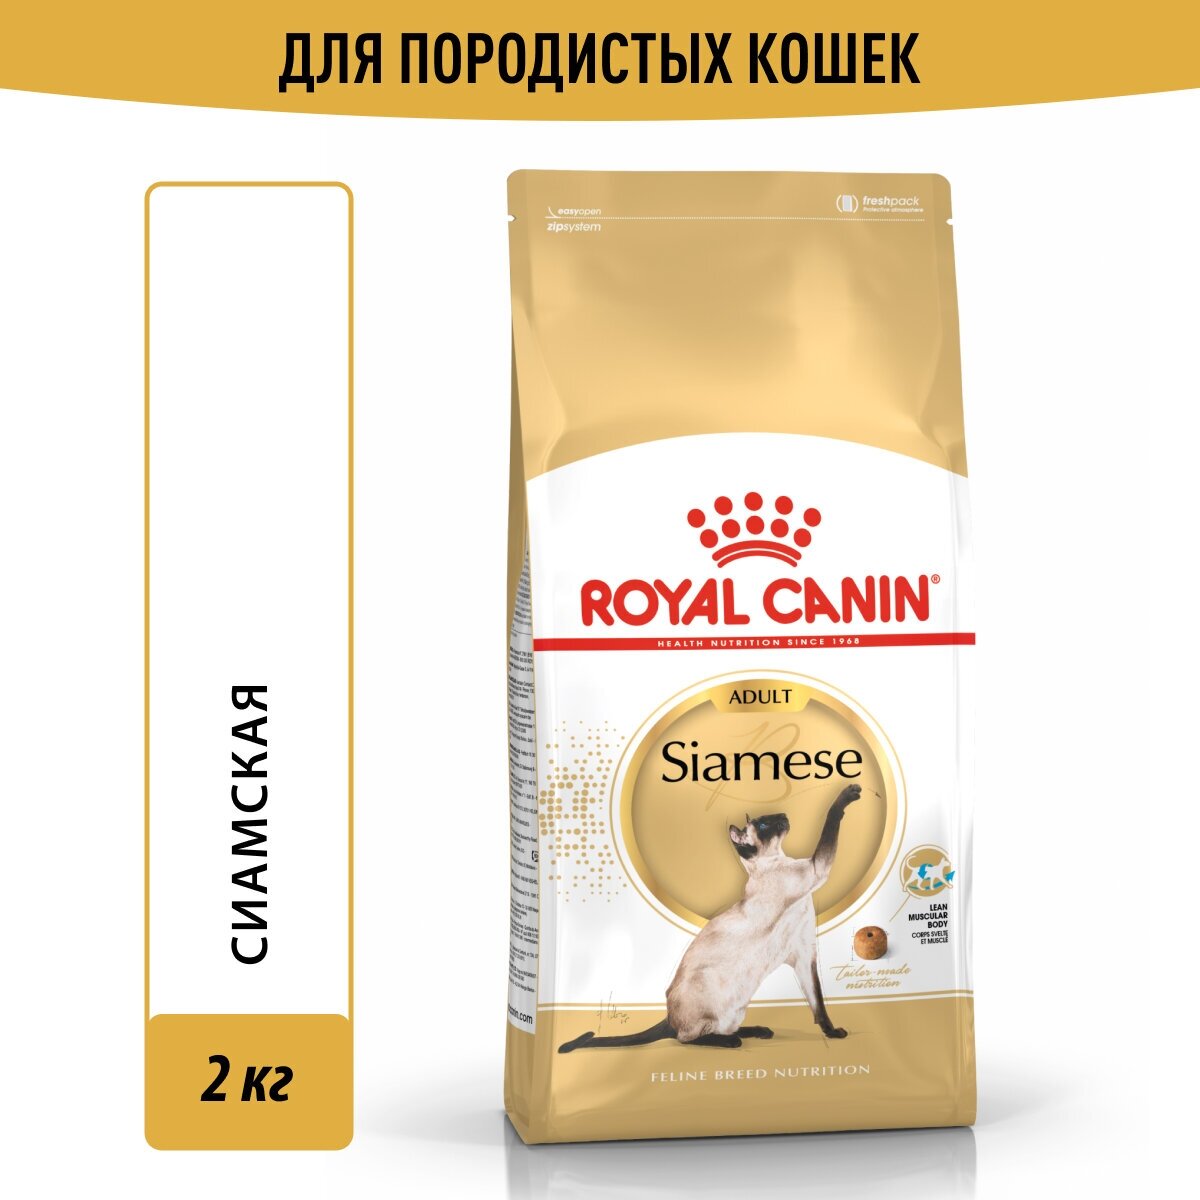 Корм для кошек Royal Canin Siamese Adult (Сиамиз Эдалт) Корм сухой сбалансированный для взрослых сиамских кошек от 12 месяцев, 2 кг купить товары для животных с быстрой доставкой на Яндекс Маркете